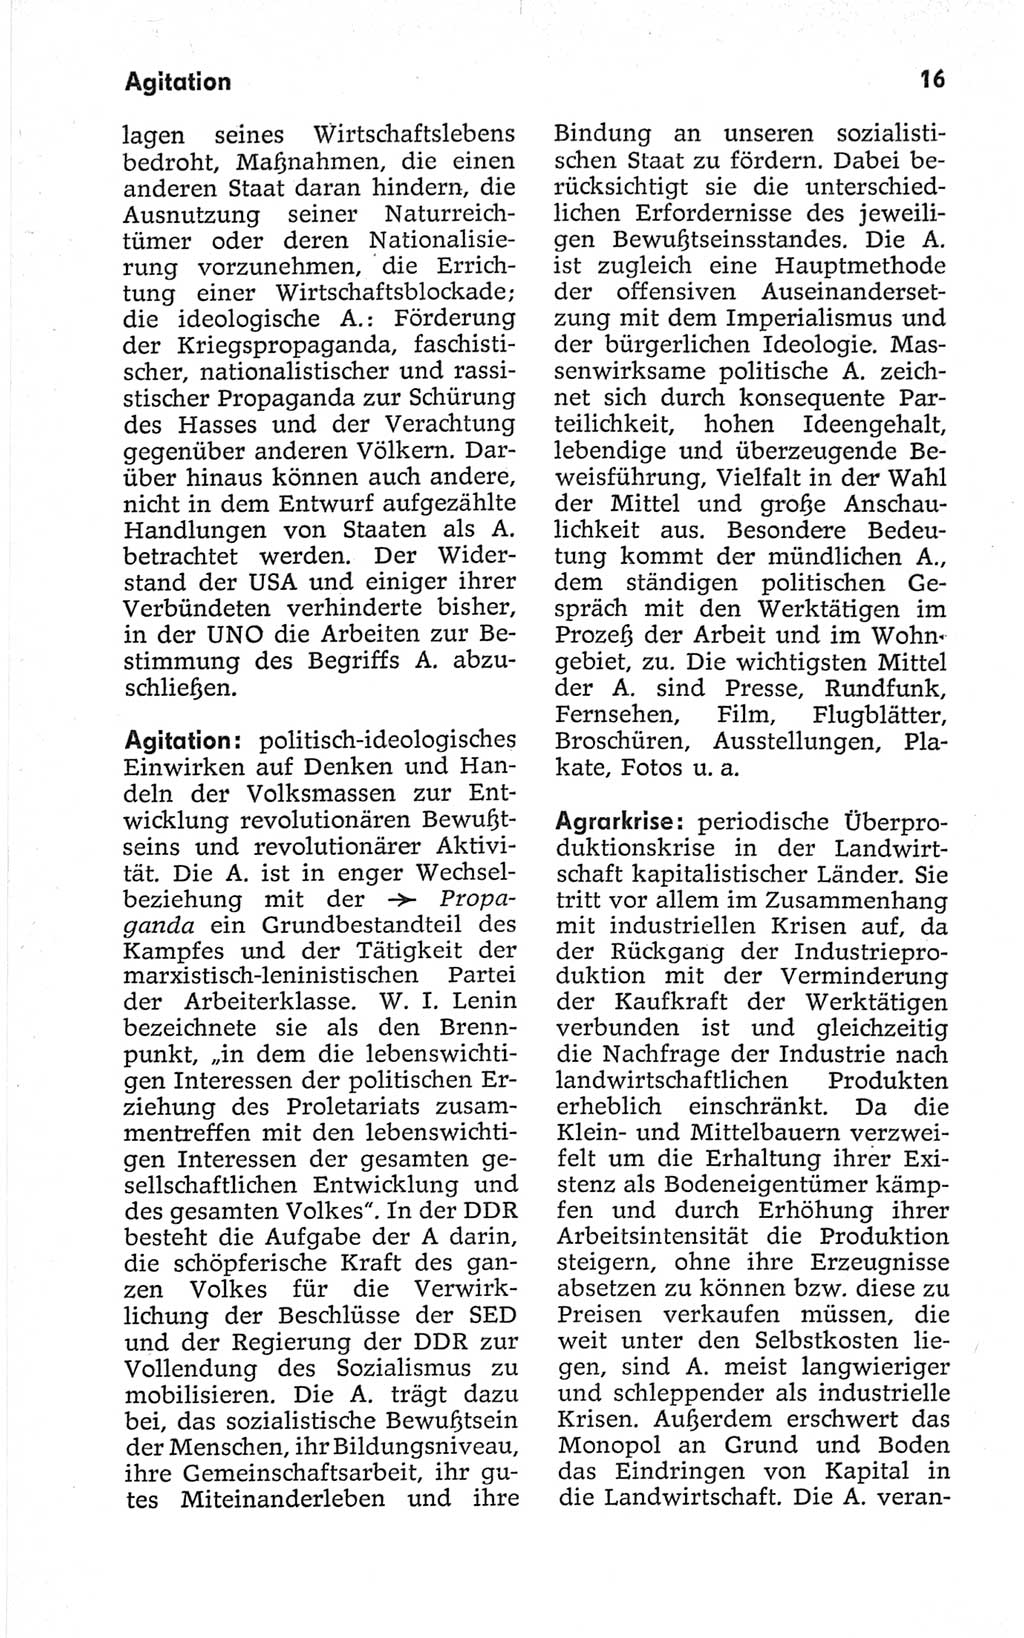 Kleines politisches Wörterbuch [Deutsche Demokratische Republik (DDR)] 1967, Seite 16 (Kl. pol. Wb. DDR 1967, S. 16)